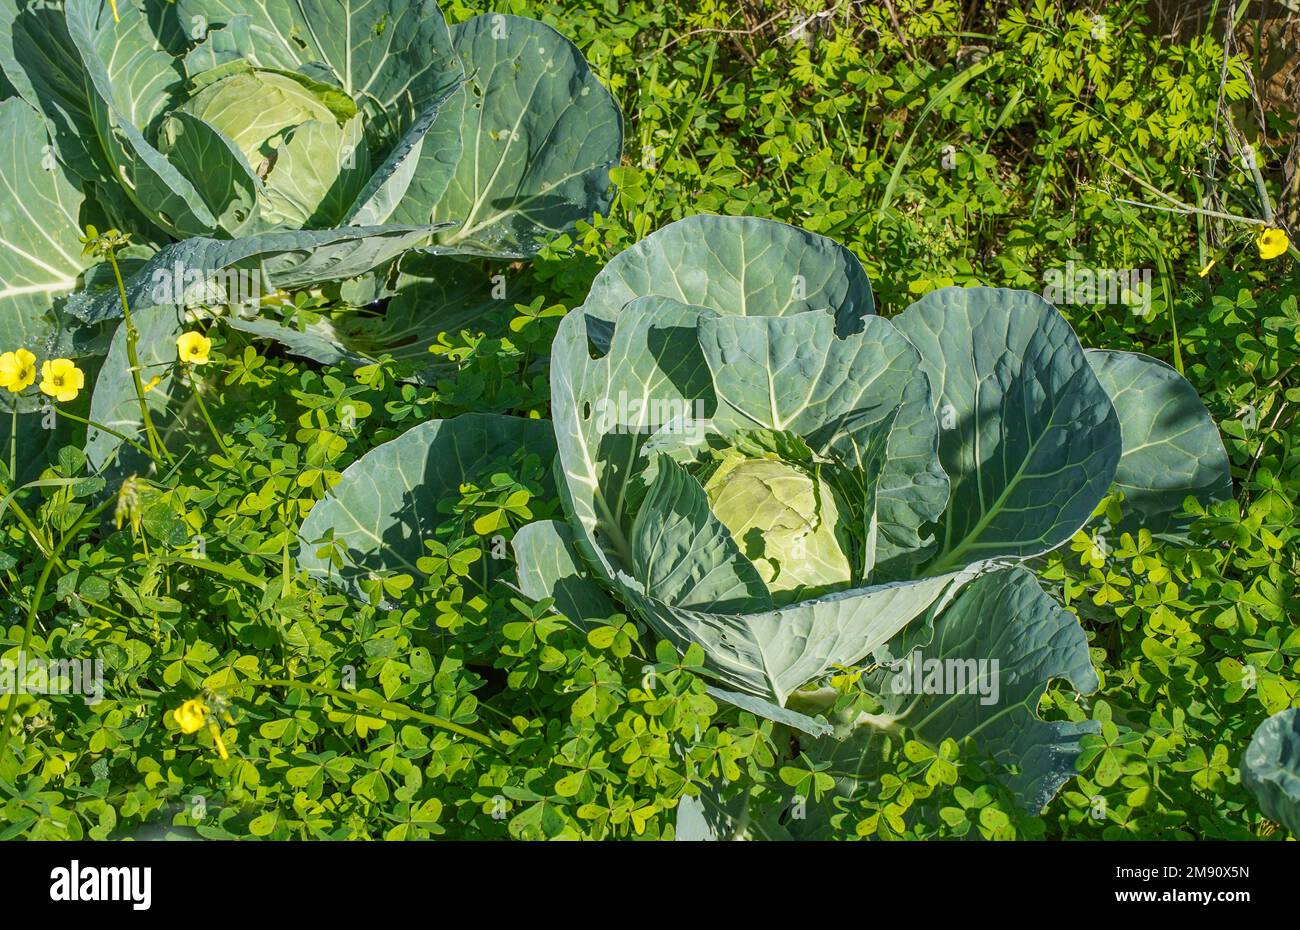 Repollo, repollo con cabeza Repollo blanco que crece en huerto, rodeado de maleza invasiva, España Foto de stock